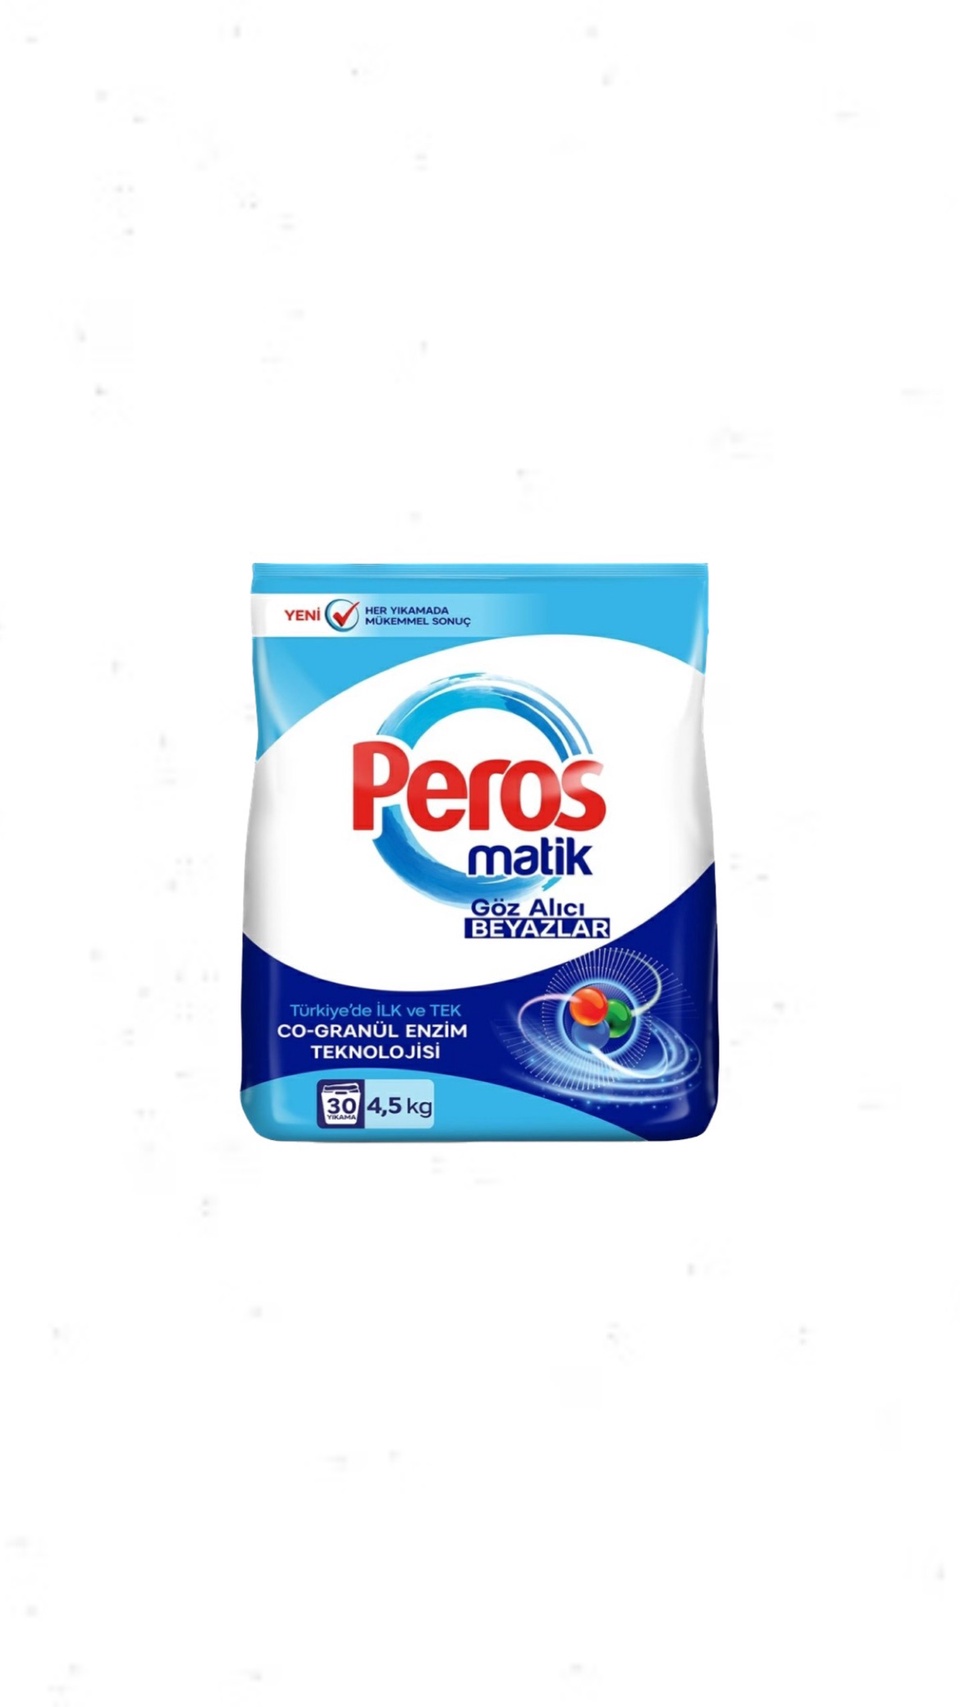 Стиральный порошок Peros matik 4.5кг - 750 ₽, заказать онлайн.